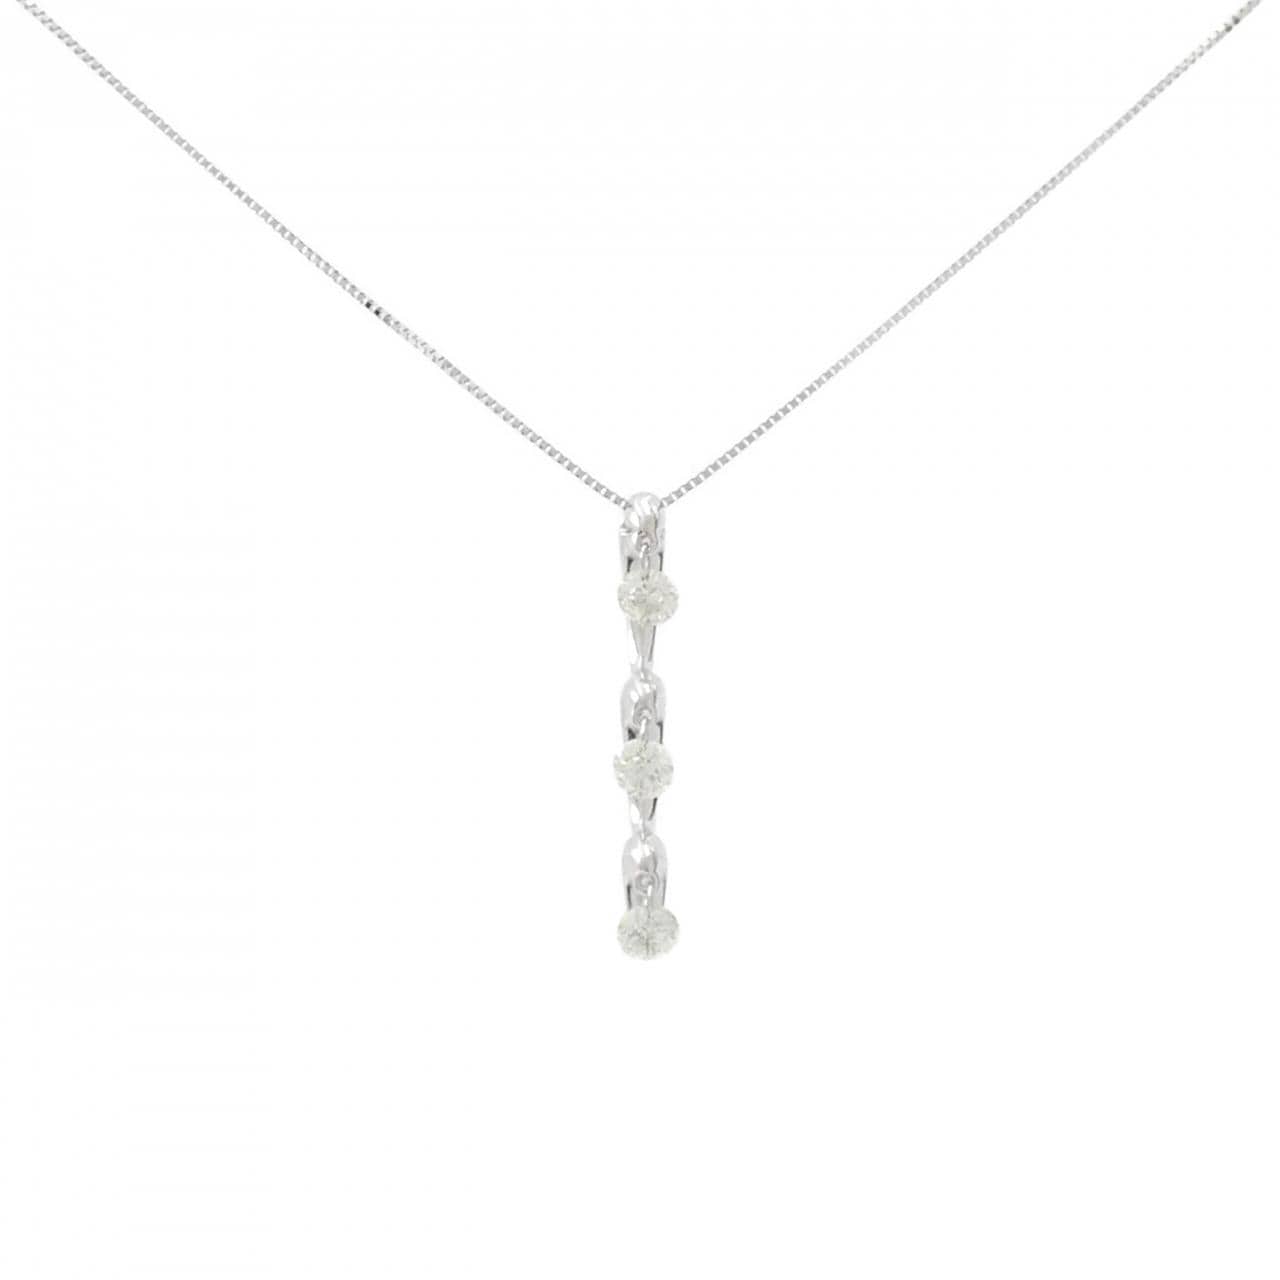 K18WG three stone Diamond necklace 0.50CT